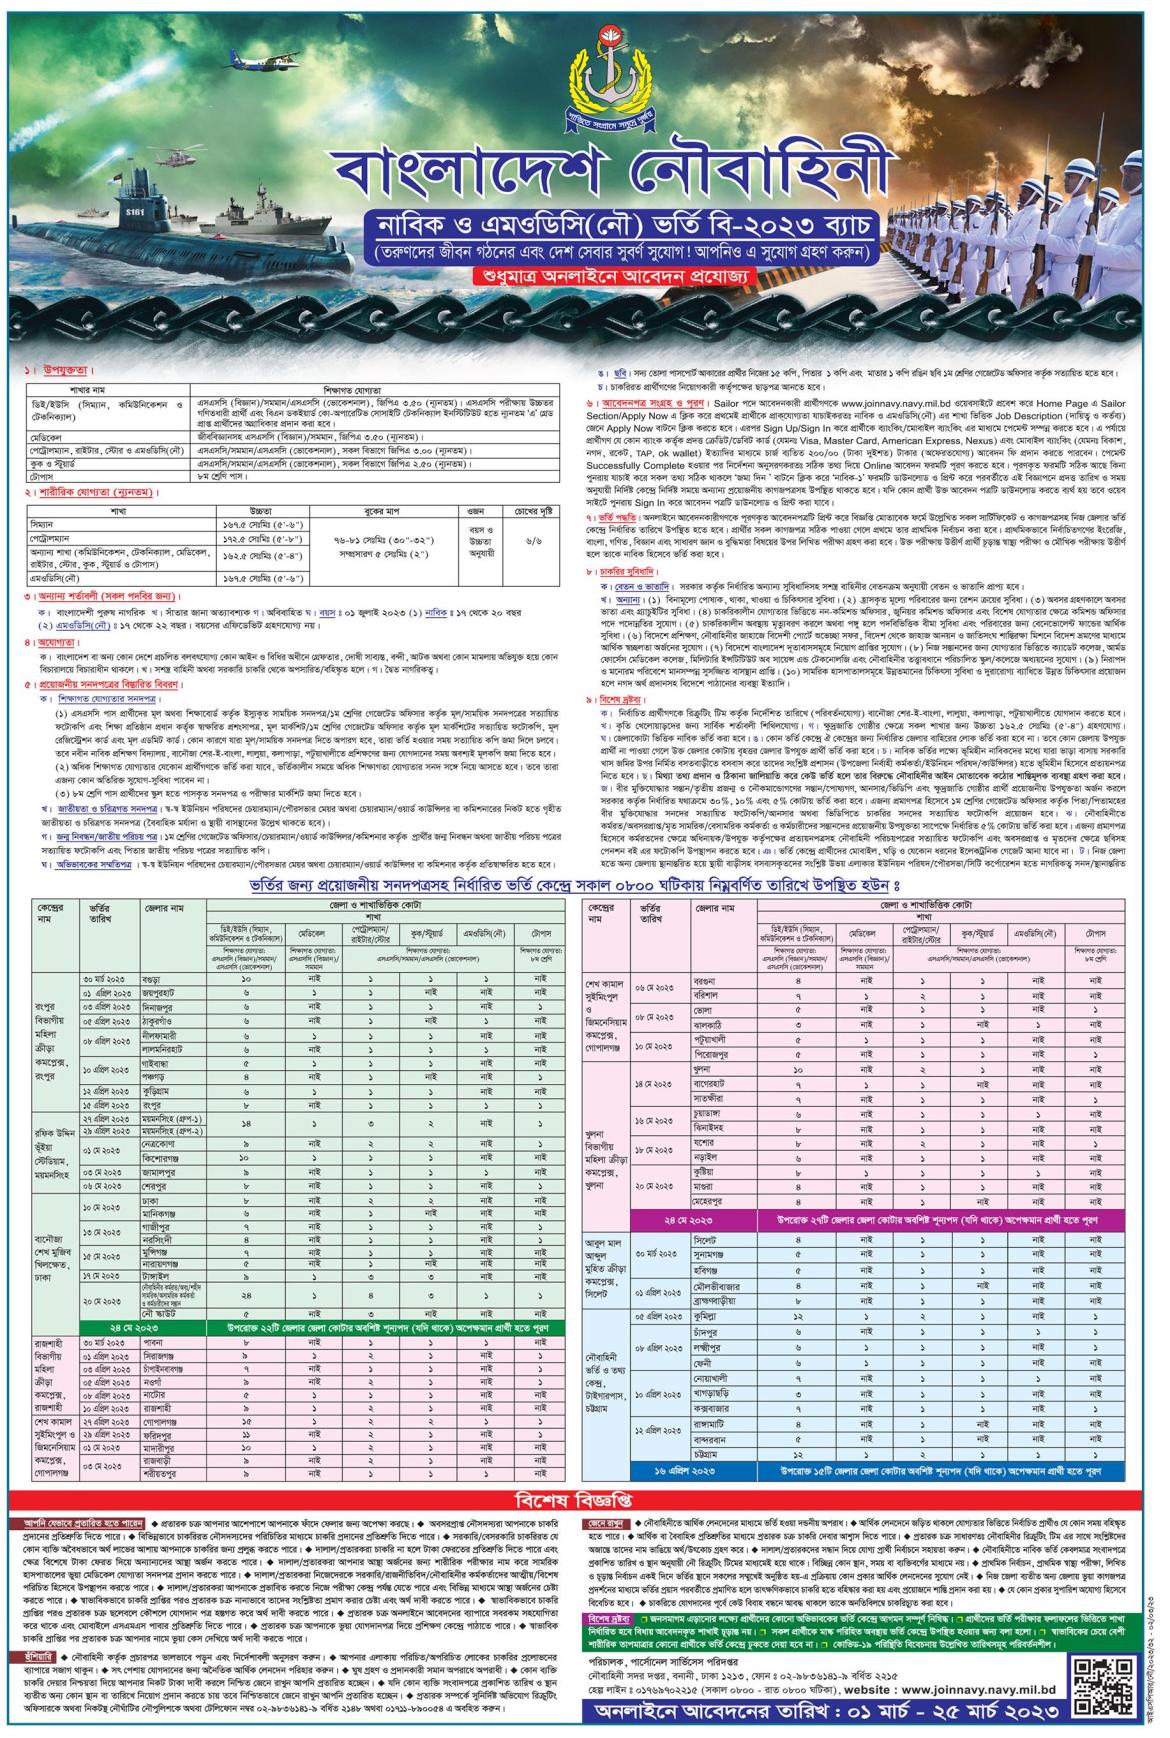 বাংলাদেশ নৌবাহিনী নাবিক ও এমওডিসি নিয়োগ ২০২৩ সার্কুলার [B-2023] / বাংলাদেশ নৌবাহিনী নিয়োগ বিজ্ঞপ্তি ২০২৩ - Bangladesh Navy sailor & MODC job circular 2023 (B-2023 Batch) https://joinnavy.navy.mil.bd/